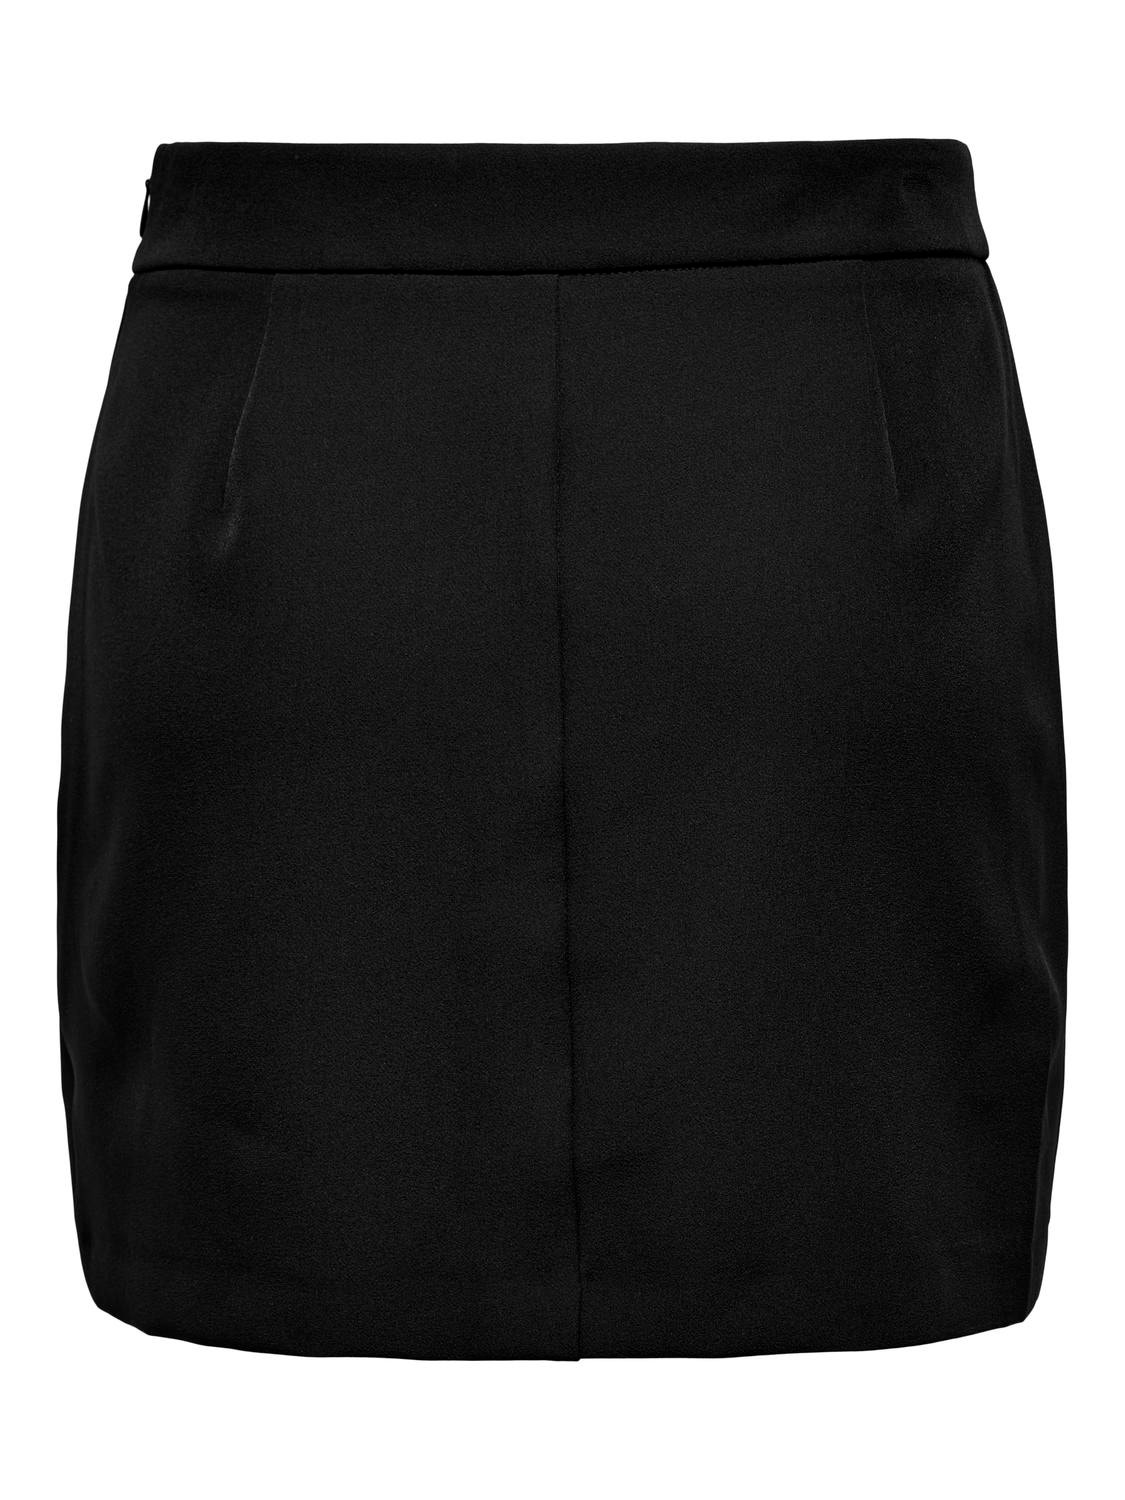 ONLY Mini skirt with slit -Black - 15304133